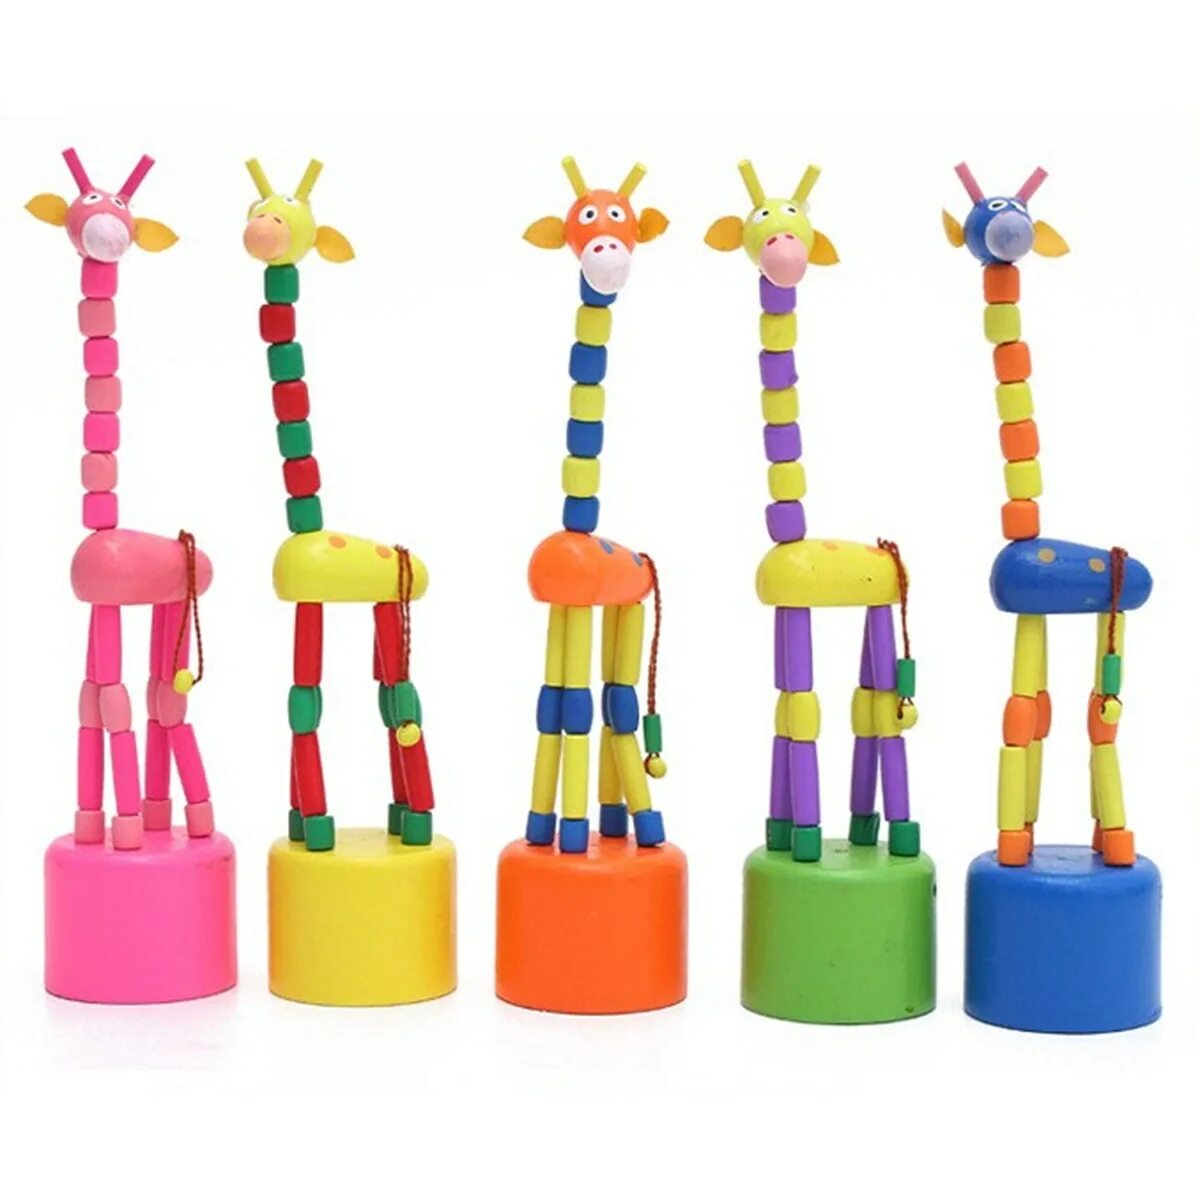 Toys dancing. Деревянный Жираф дергунчик. Игрушка Жирафик. Детская игрушка деревянная Жирафик. Игрушка Жирафик деревянный на подставке.